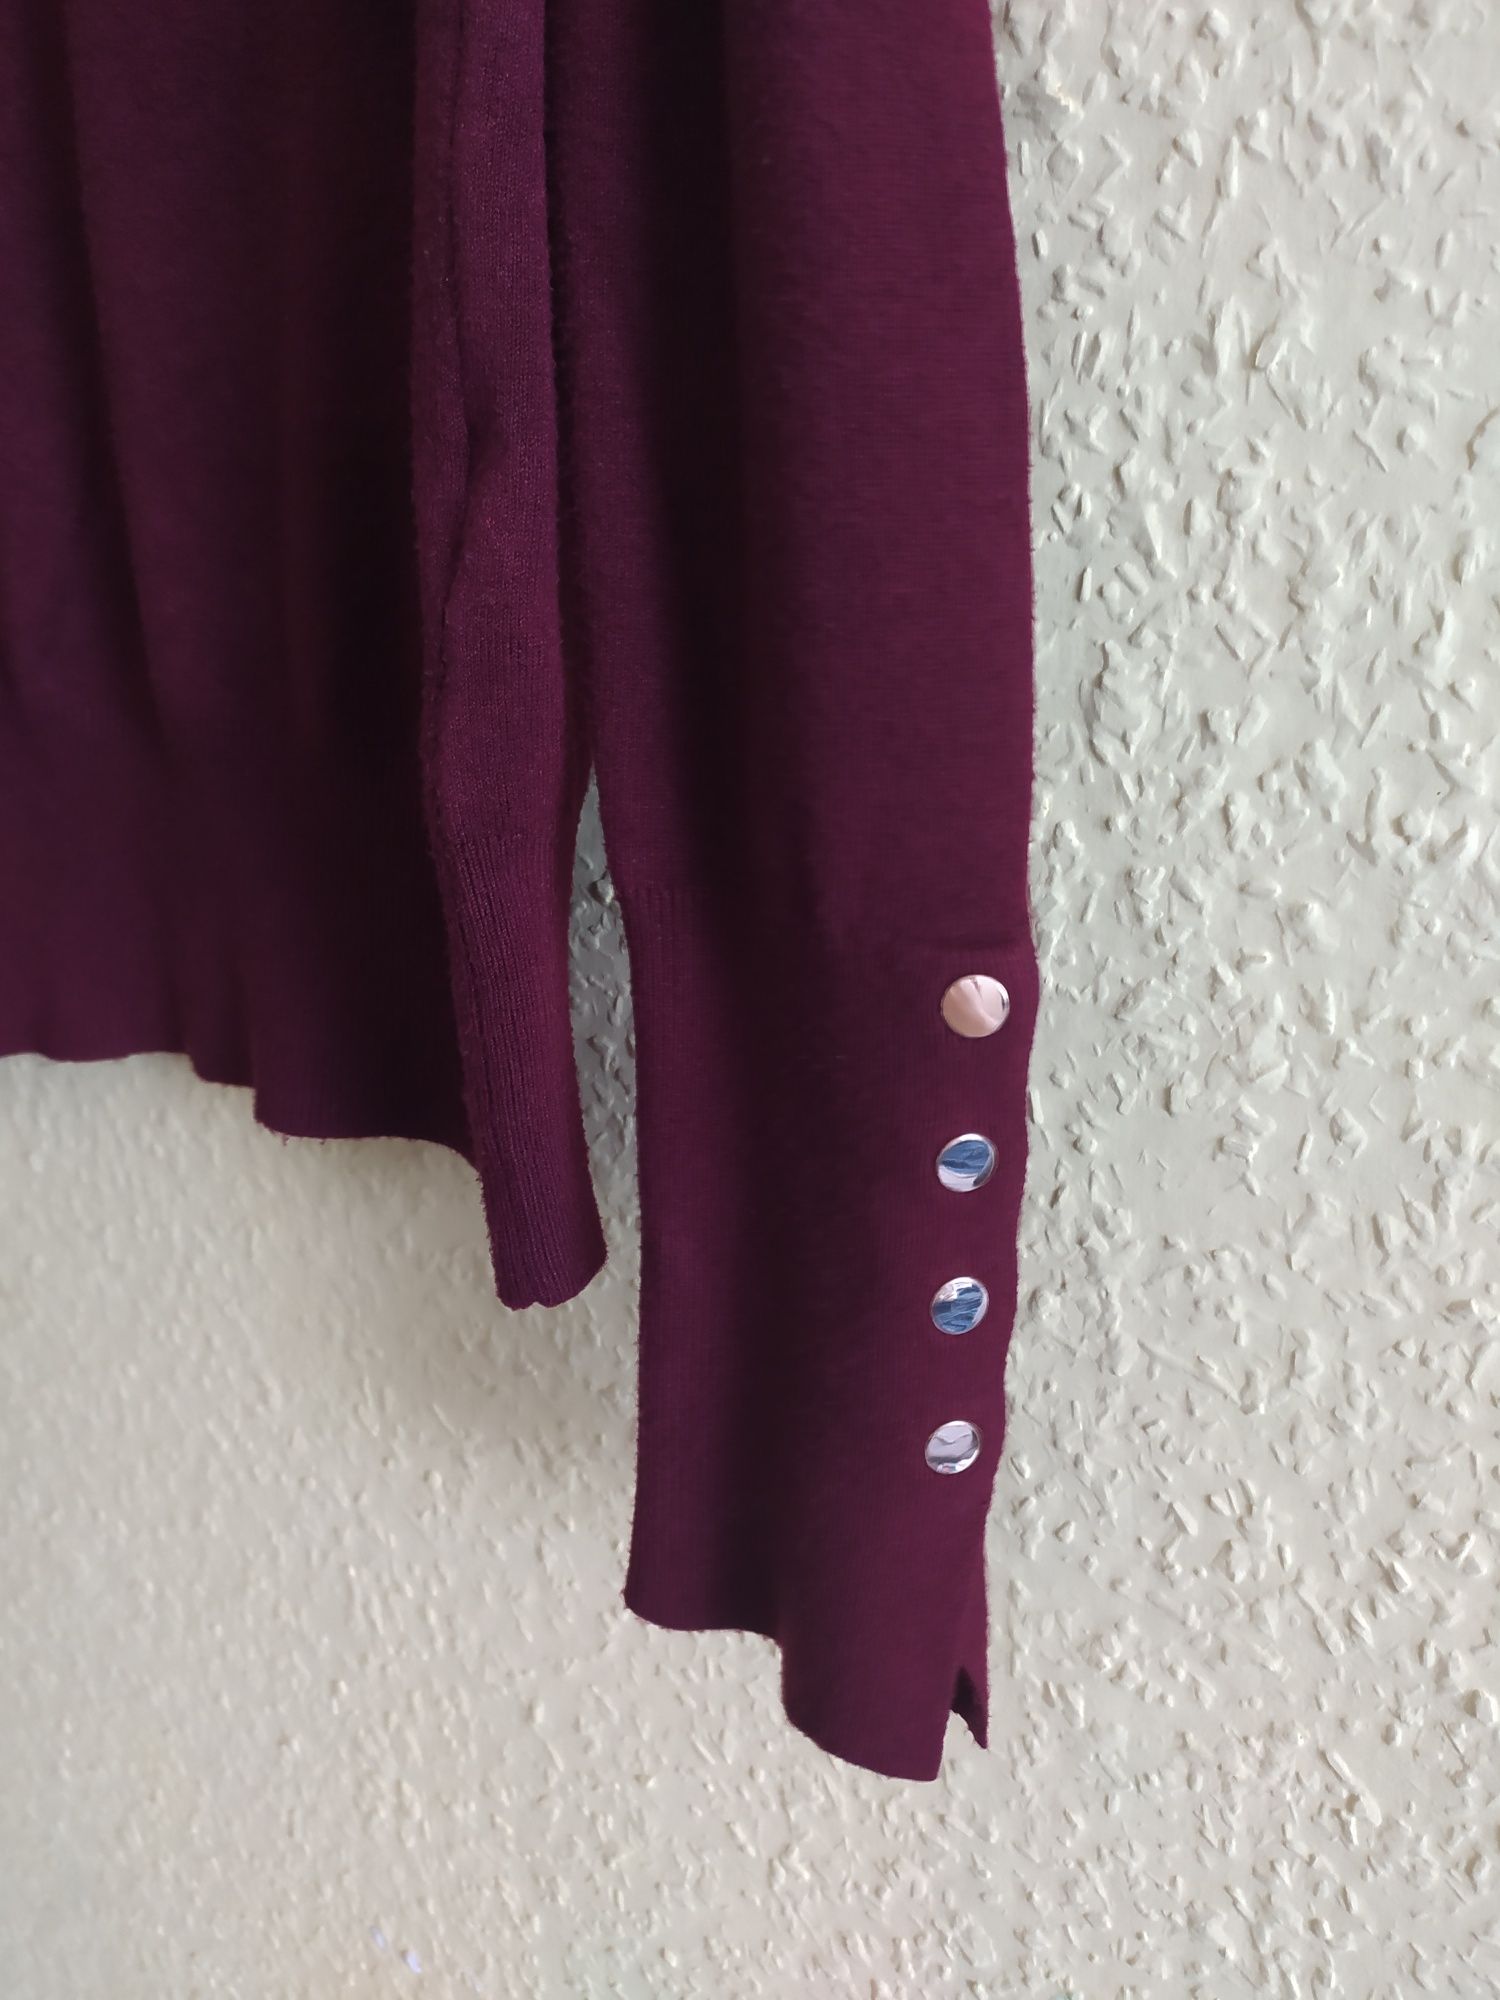 Cienki sweterek ZARA bordowy kolor, ozdobne rękawy S / M